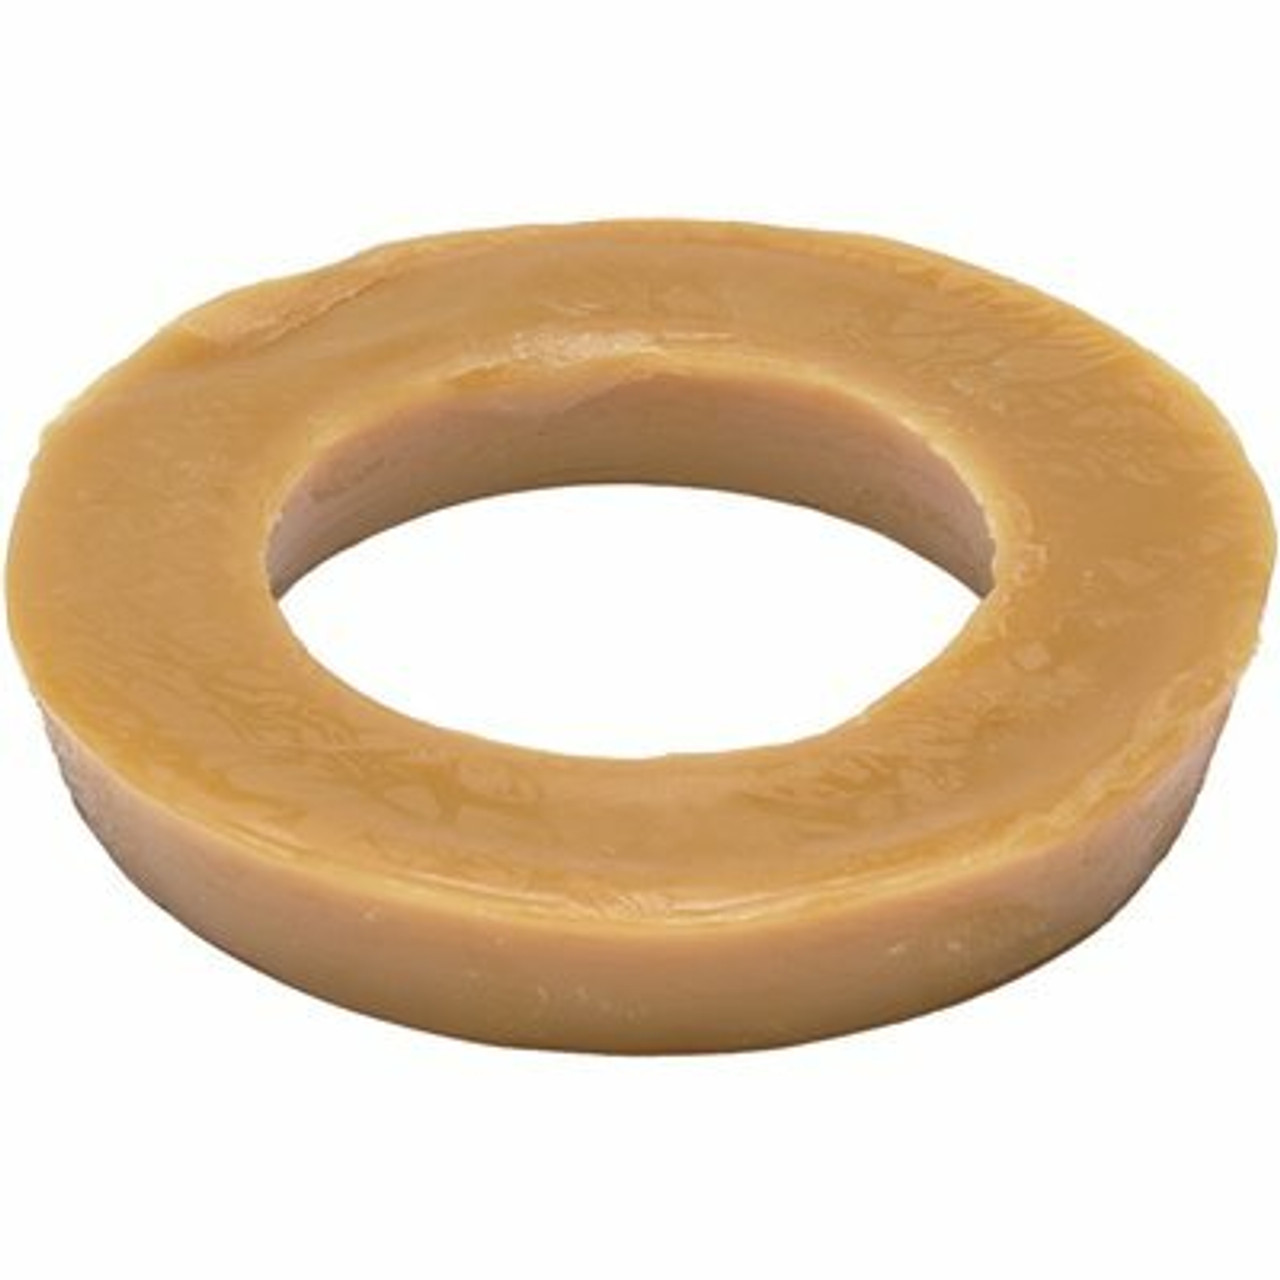 Hercules Johni-Ring 3 In. - 4 In. Standard Toilet Wax Ring